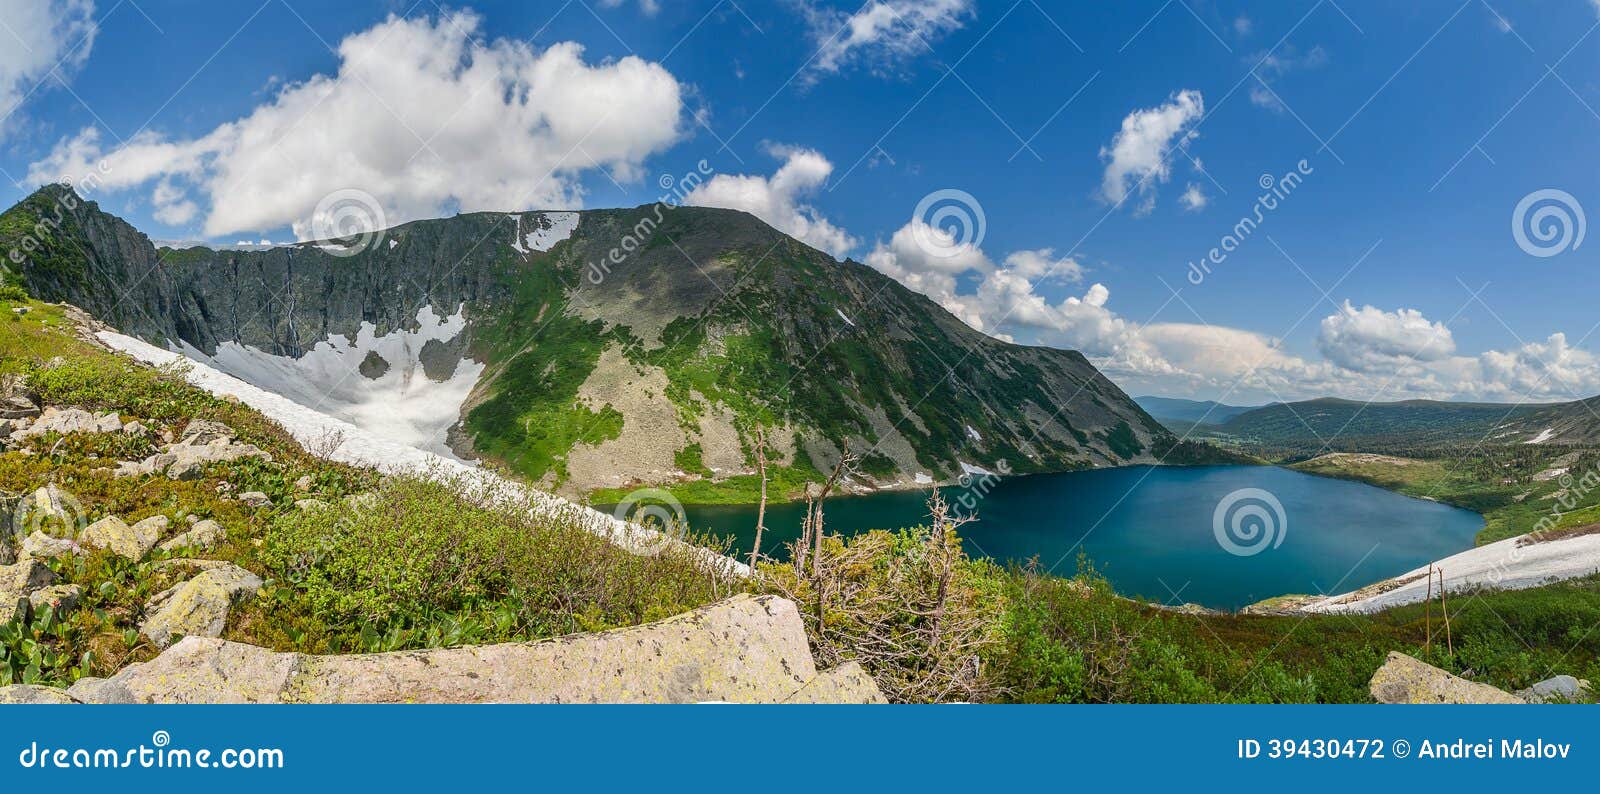 mountain lake in siberia